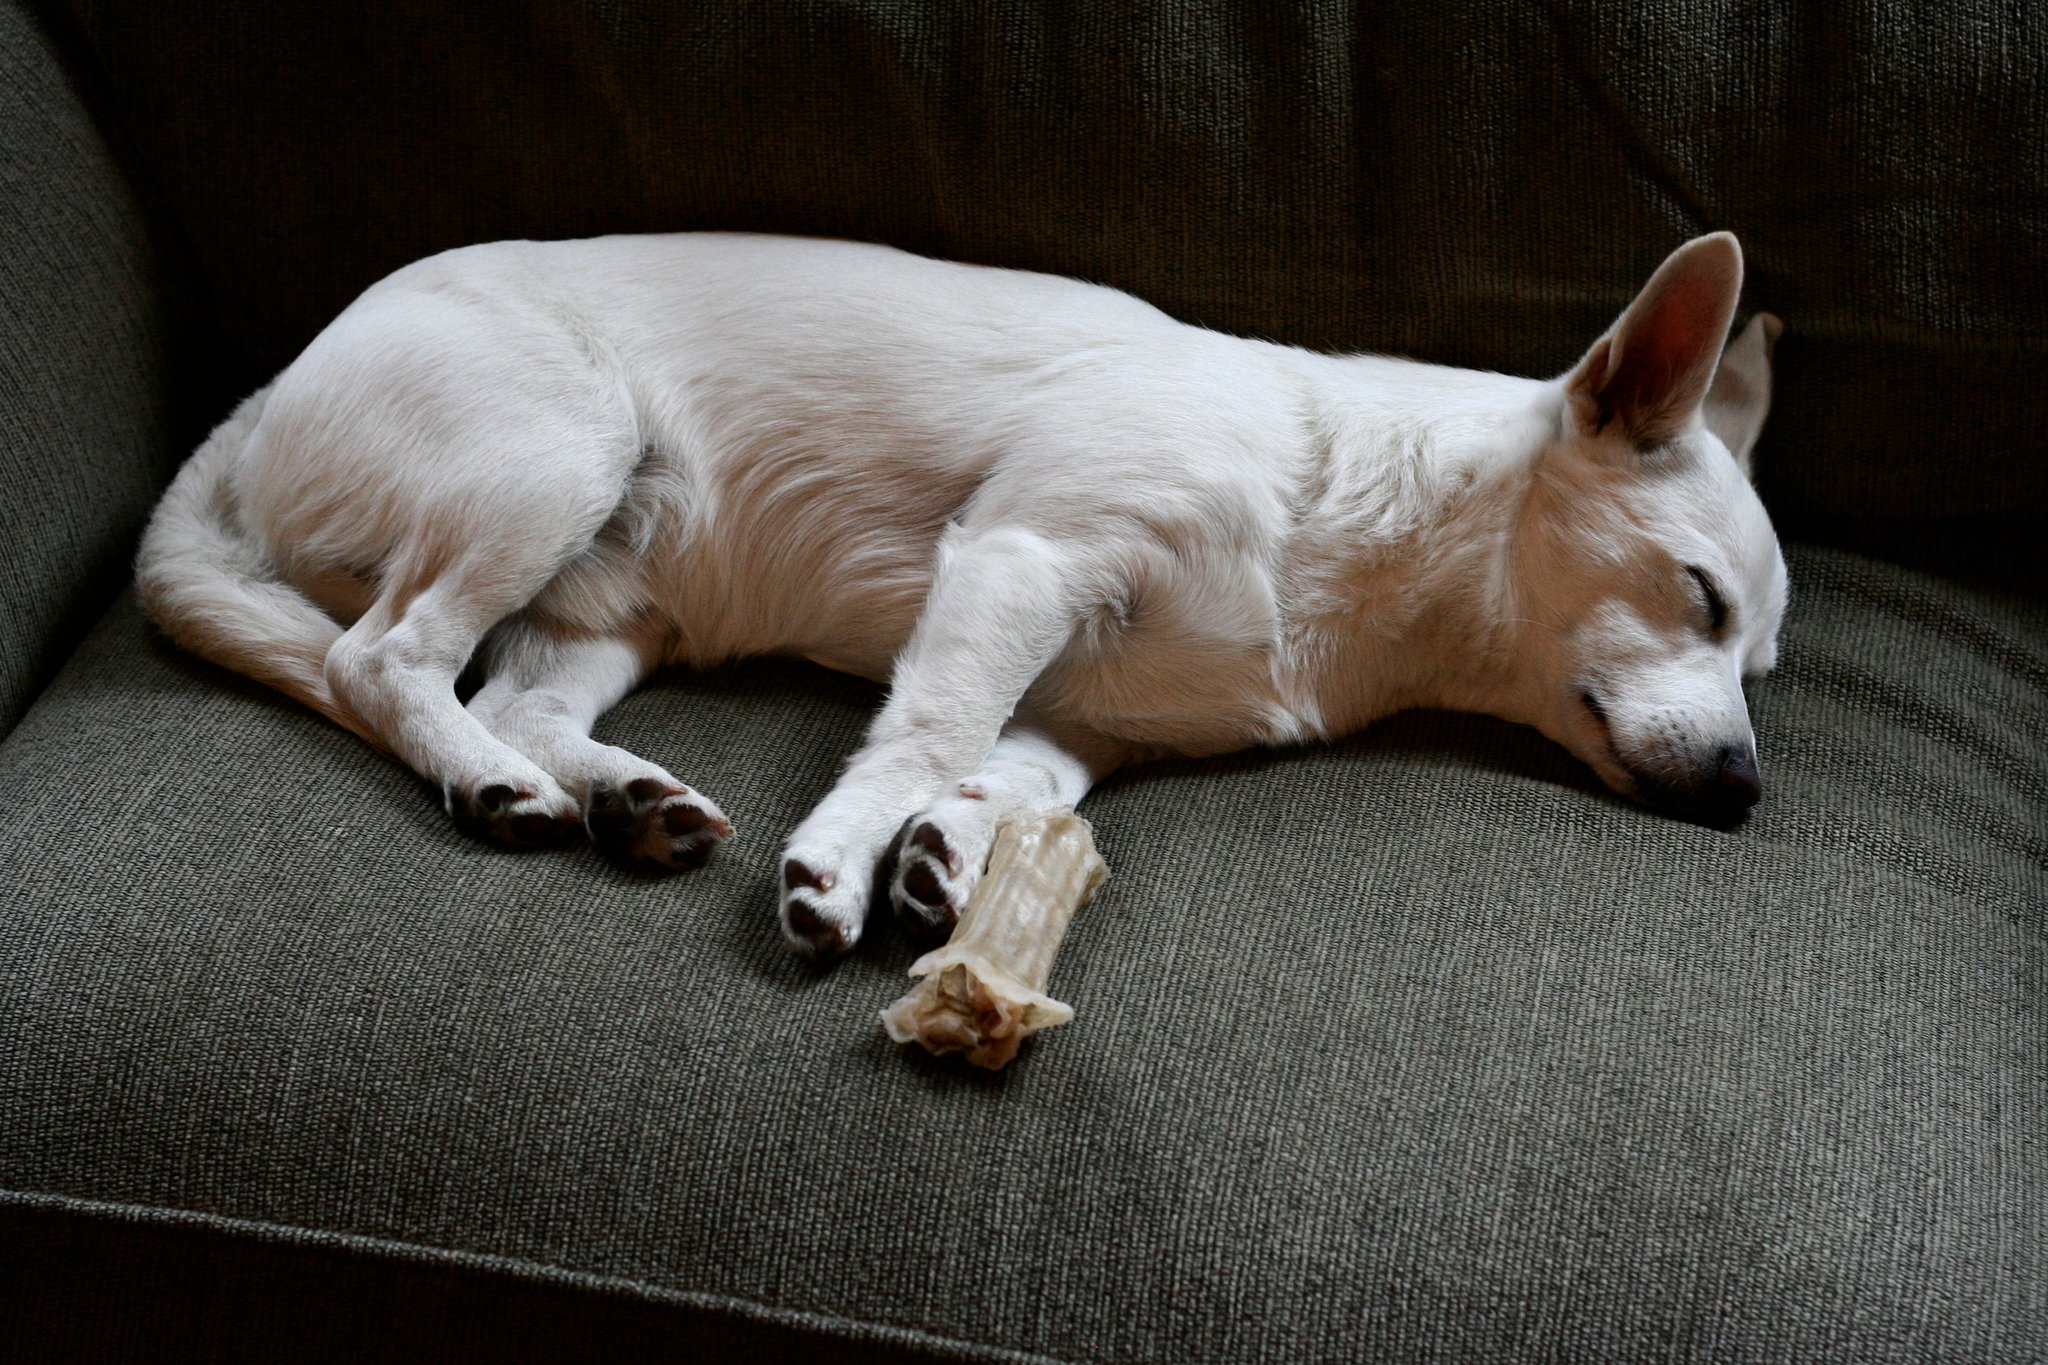 Kanapén alvó kutya - fő a kényelem